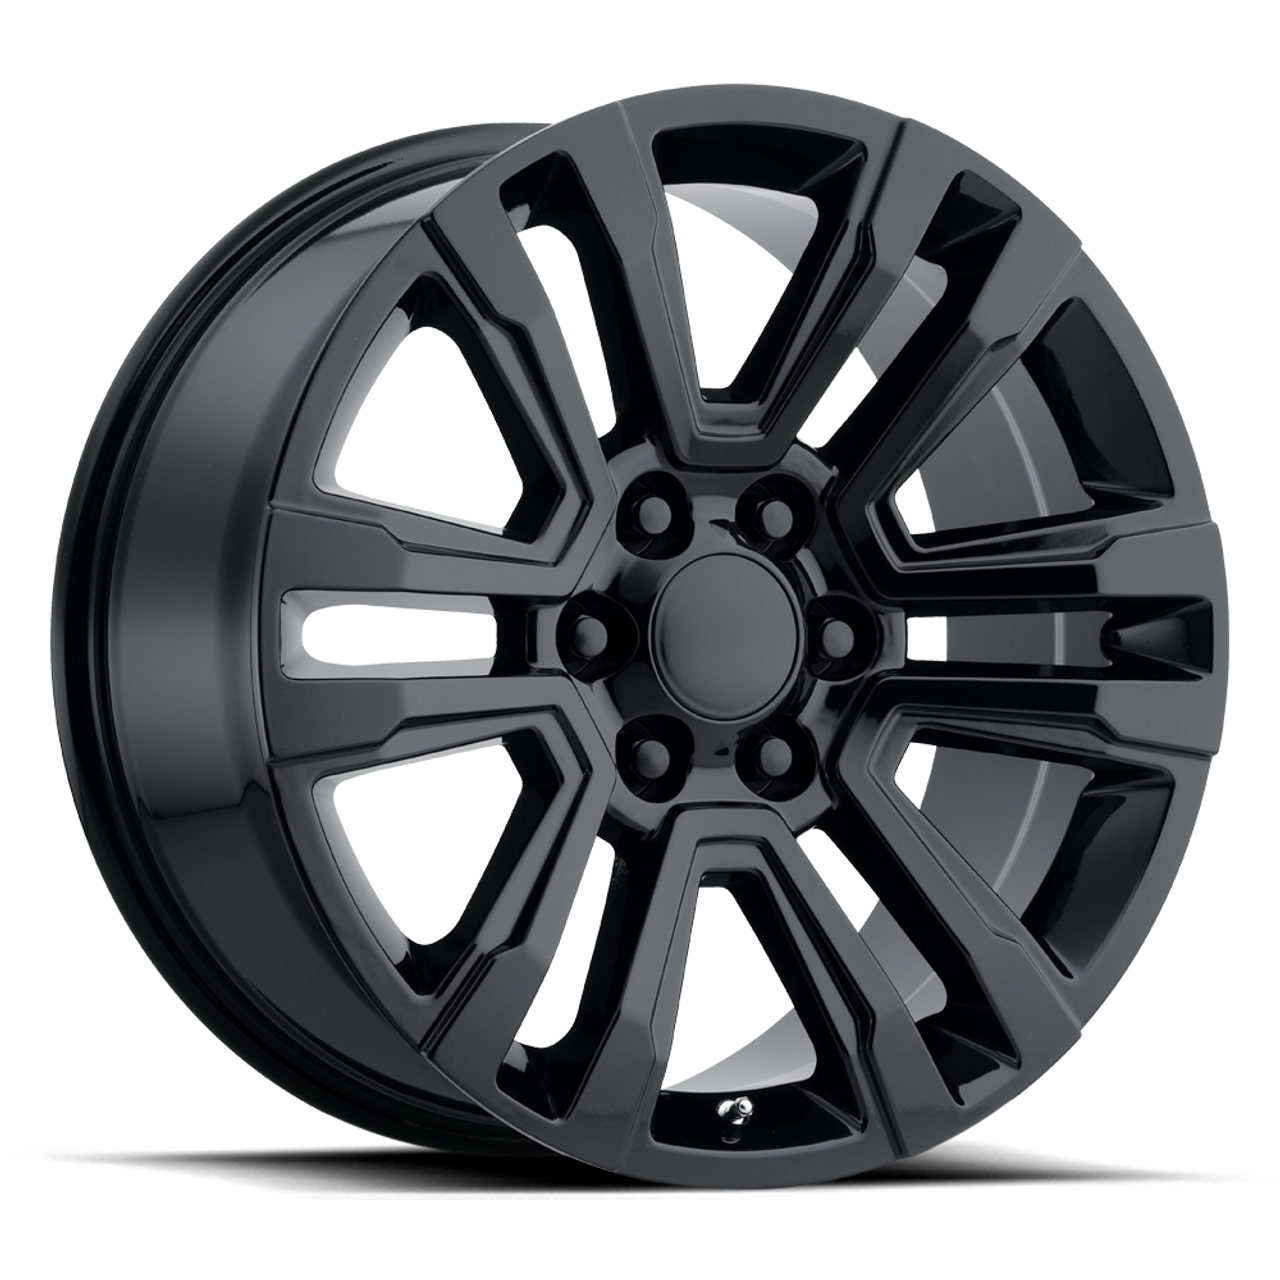 Set 4 Performance Replicas PR182 26x10 6x5.5 Gloss Black Wheels 26" 31mm Rims